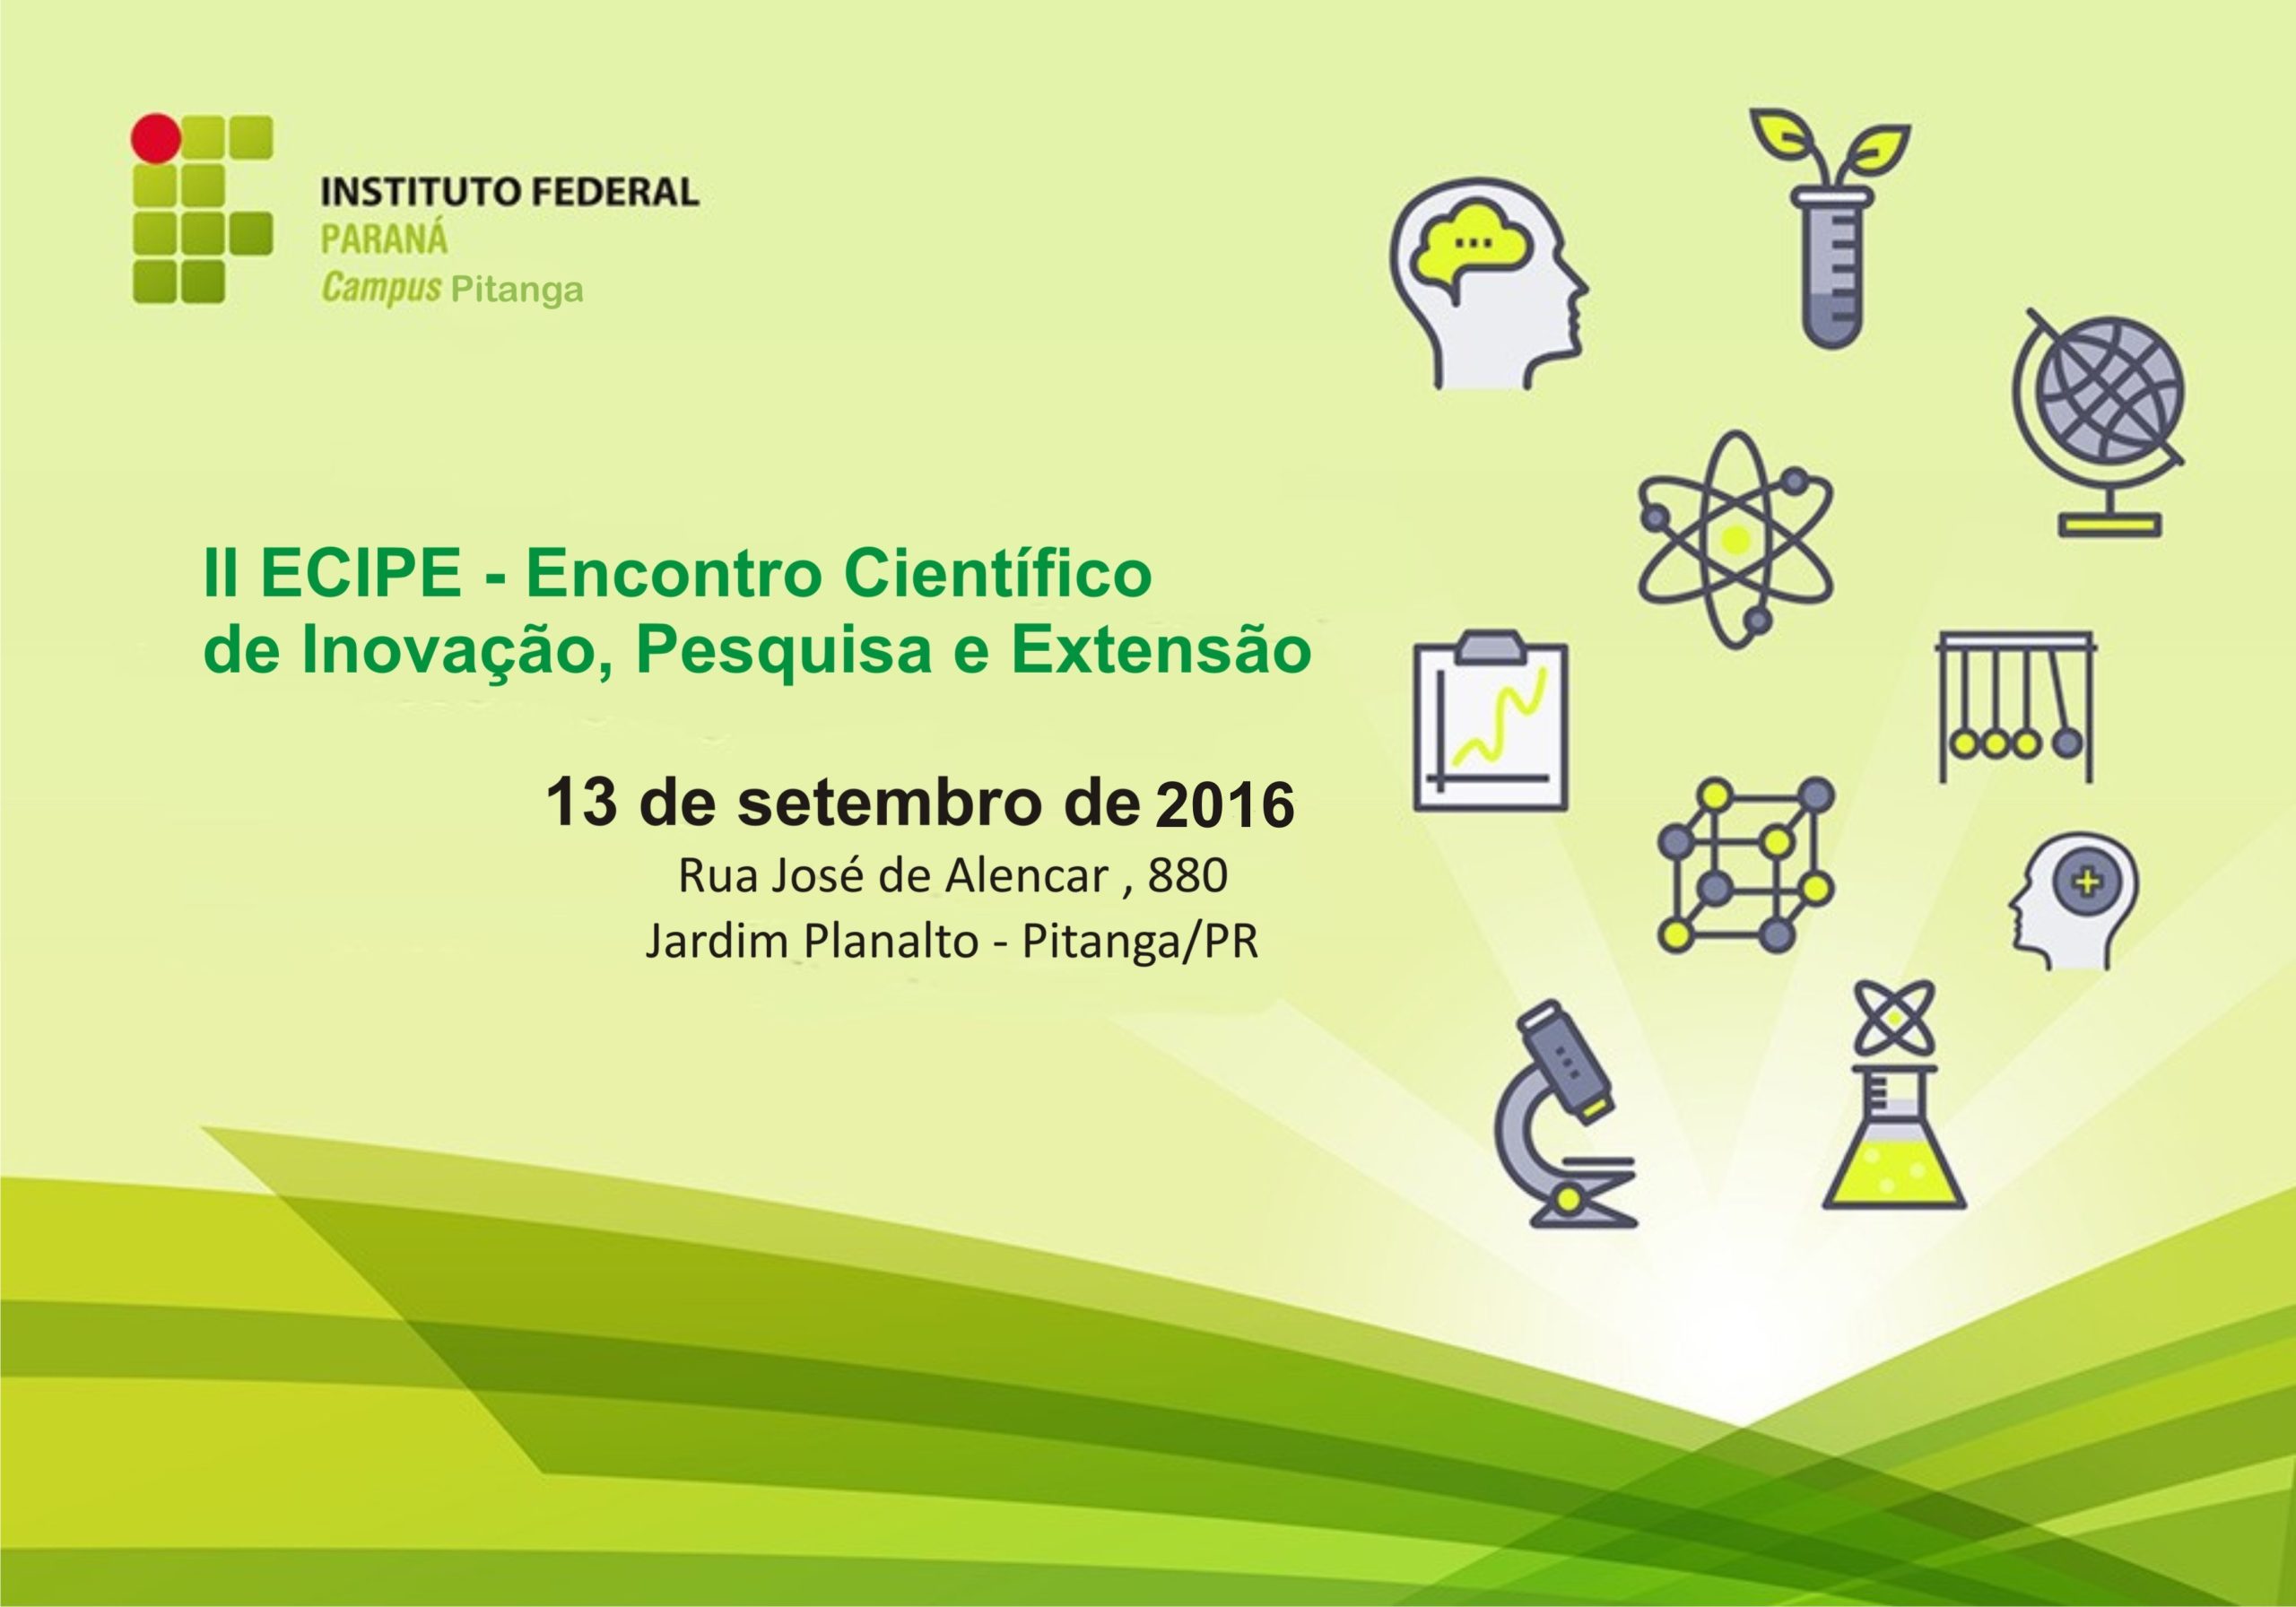 II Ecipe - Encontro Científico de Inovação, Pesquisa e Extensão - 13 de setembro de 2016